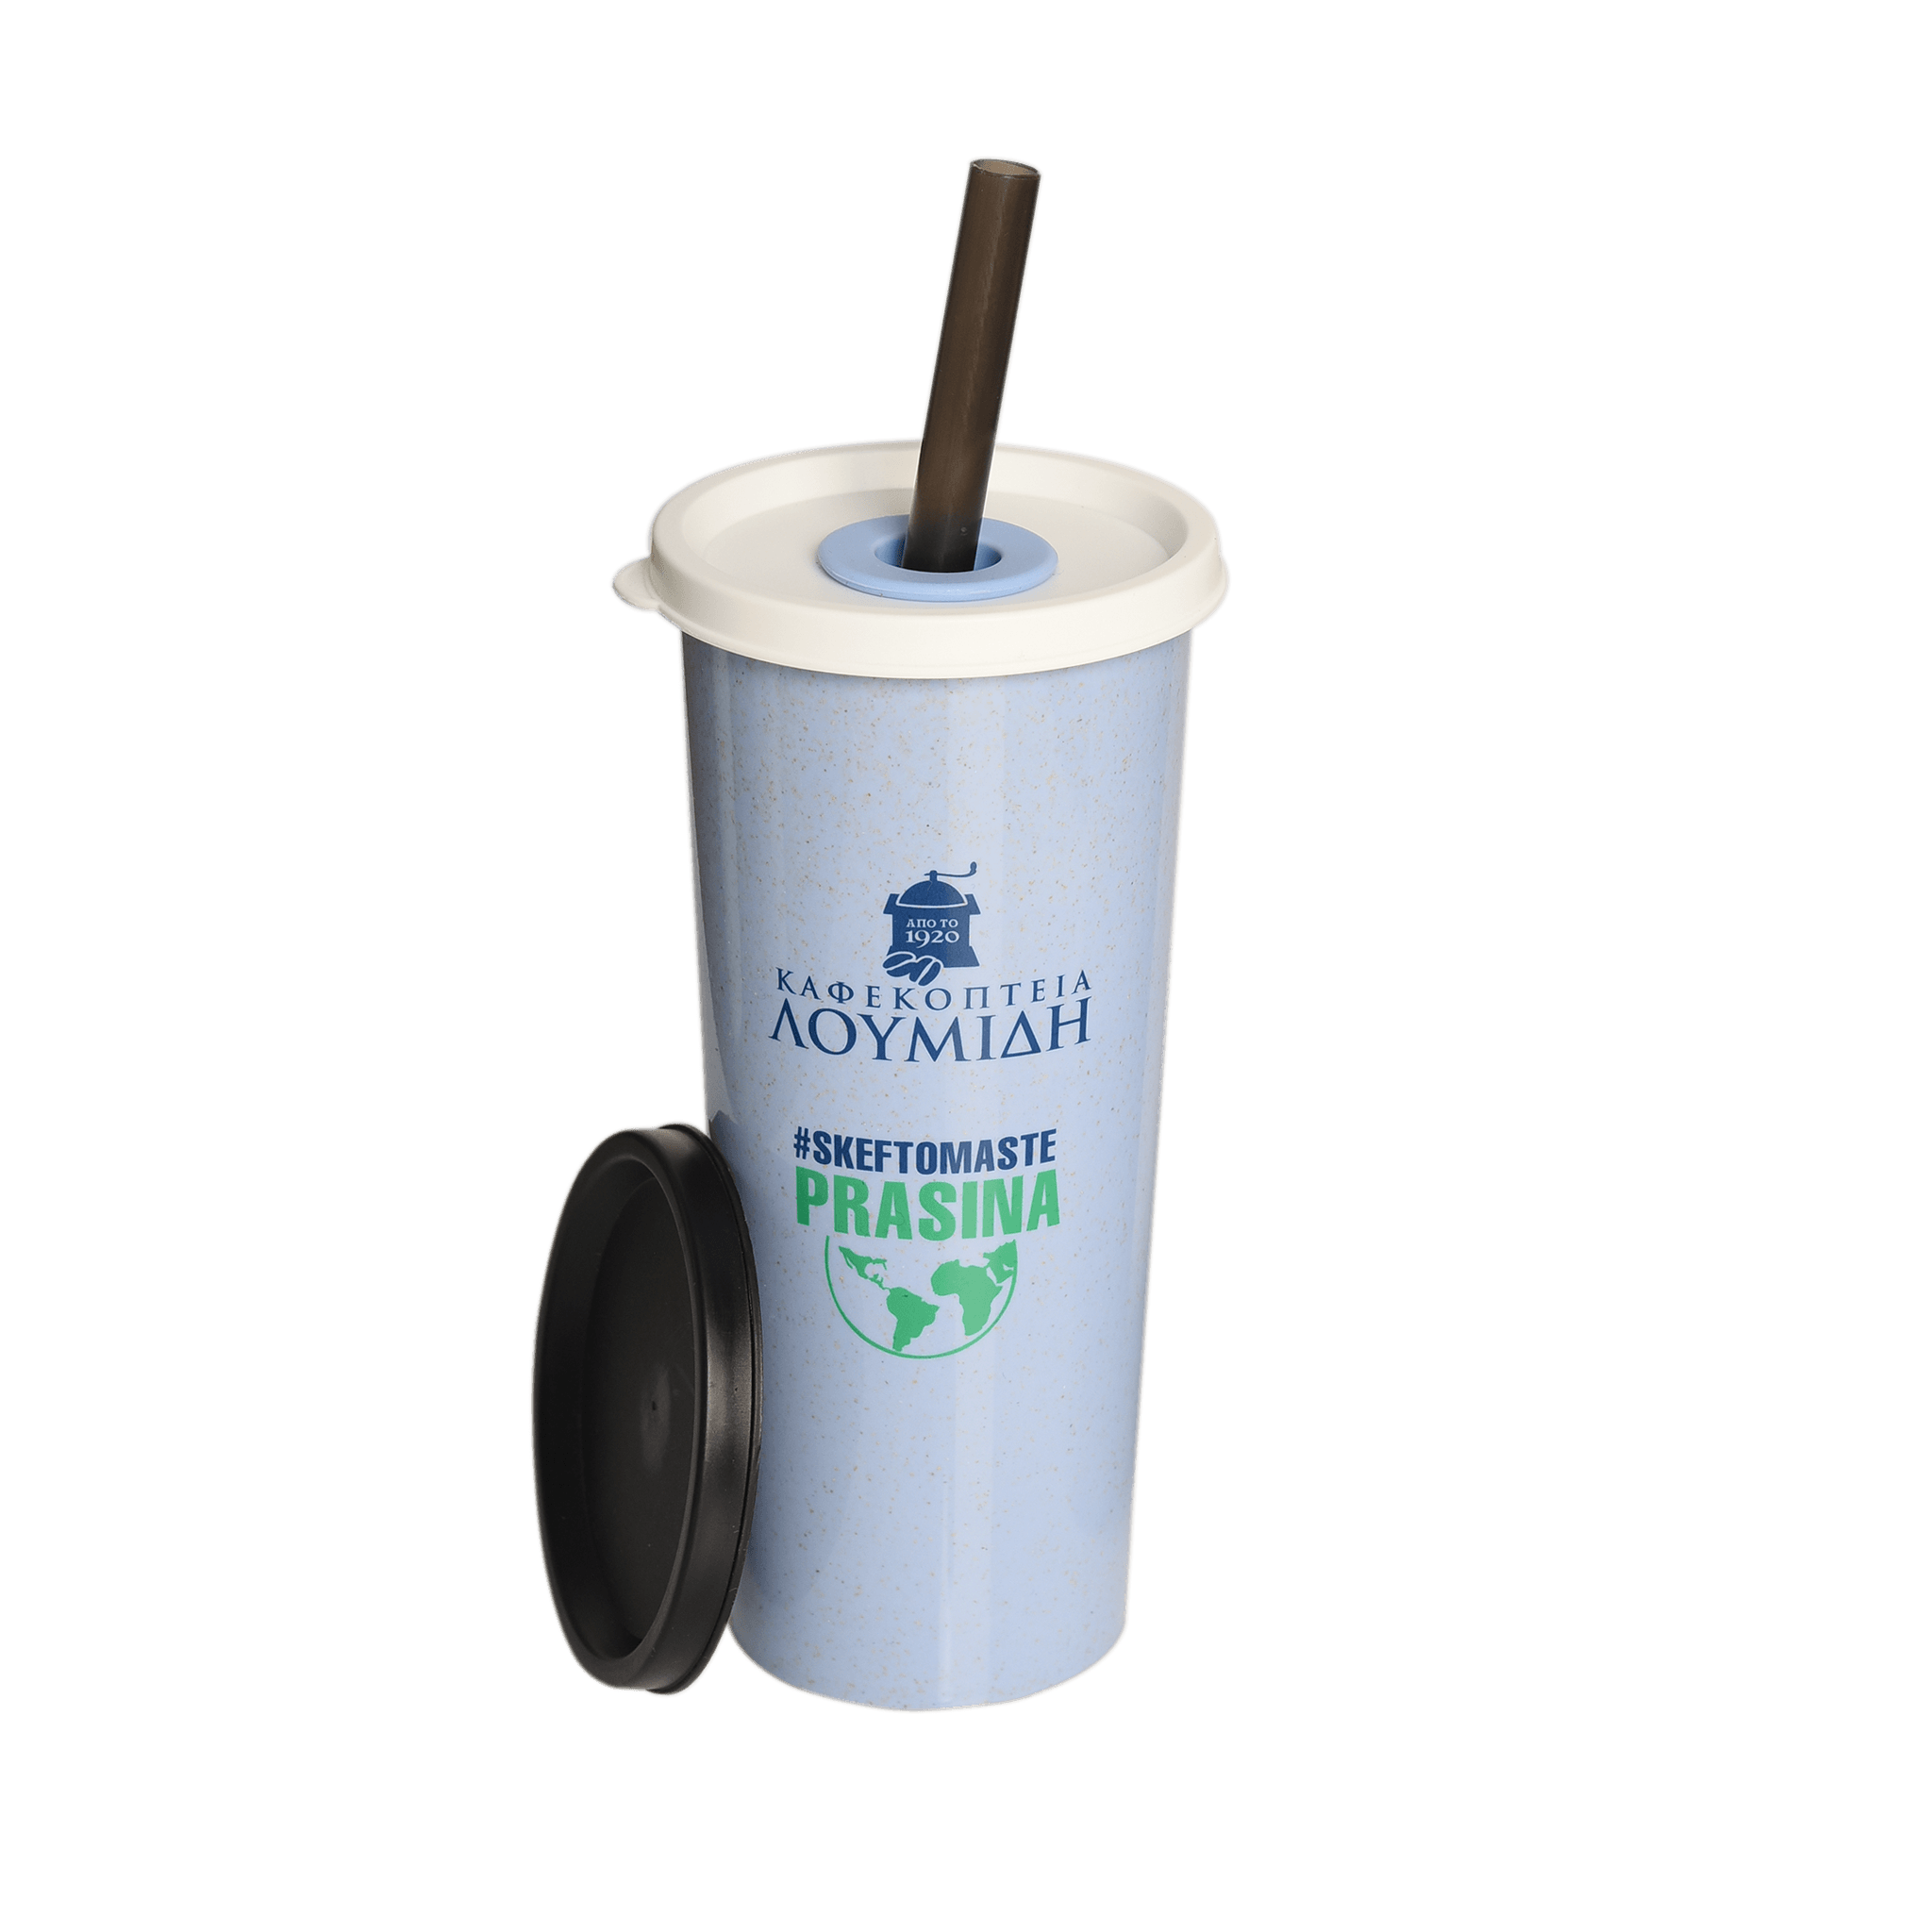 Επαναχρησιμοποιούμενο Ποτήρι Καφέ με Καλαμάκι "Καφεκοπτεία Λουμίδη" | Μπλε - Καφεκοπτεία Λουμίδη